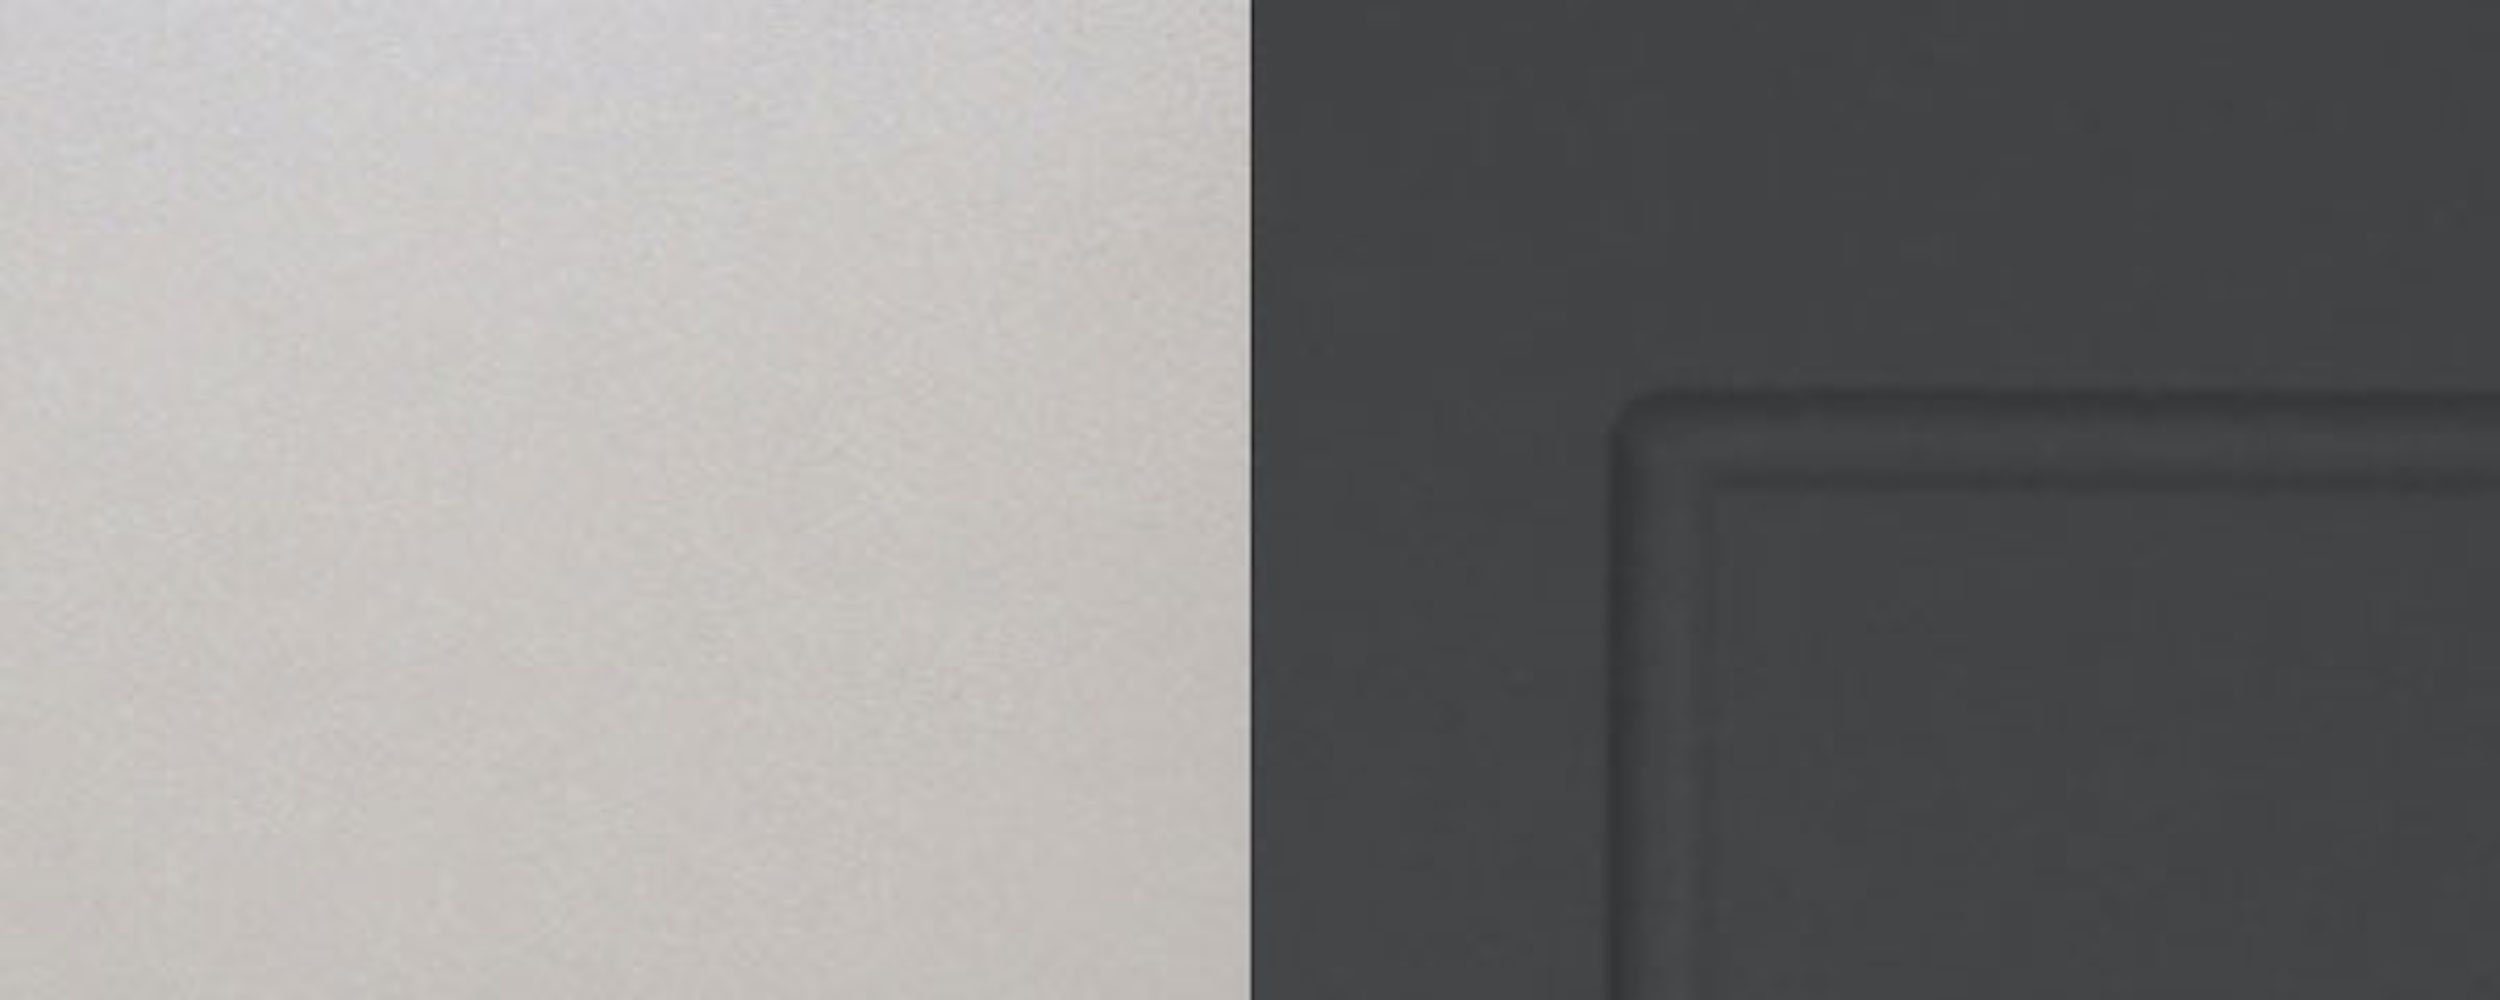 Feldmann-Wohnen Klapphängeschrank Kvantum (Kvantum) & matt Klapptür Korpusfarbe (Milchglaseinsatz) graphit 1 60cm wählbar Front